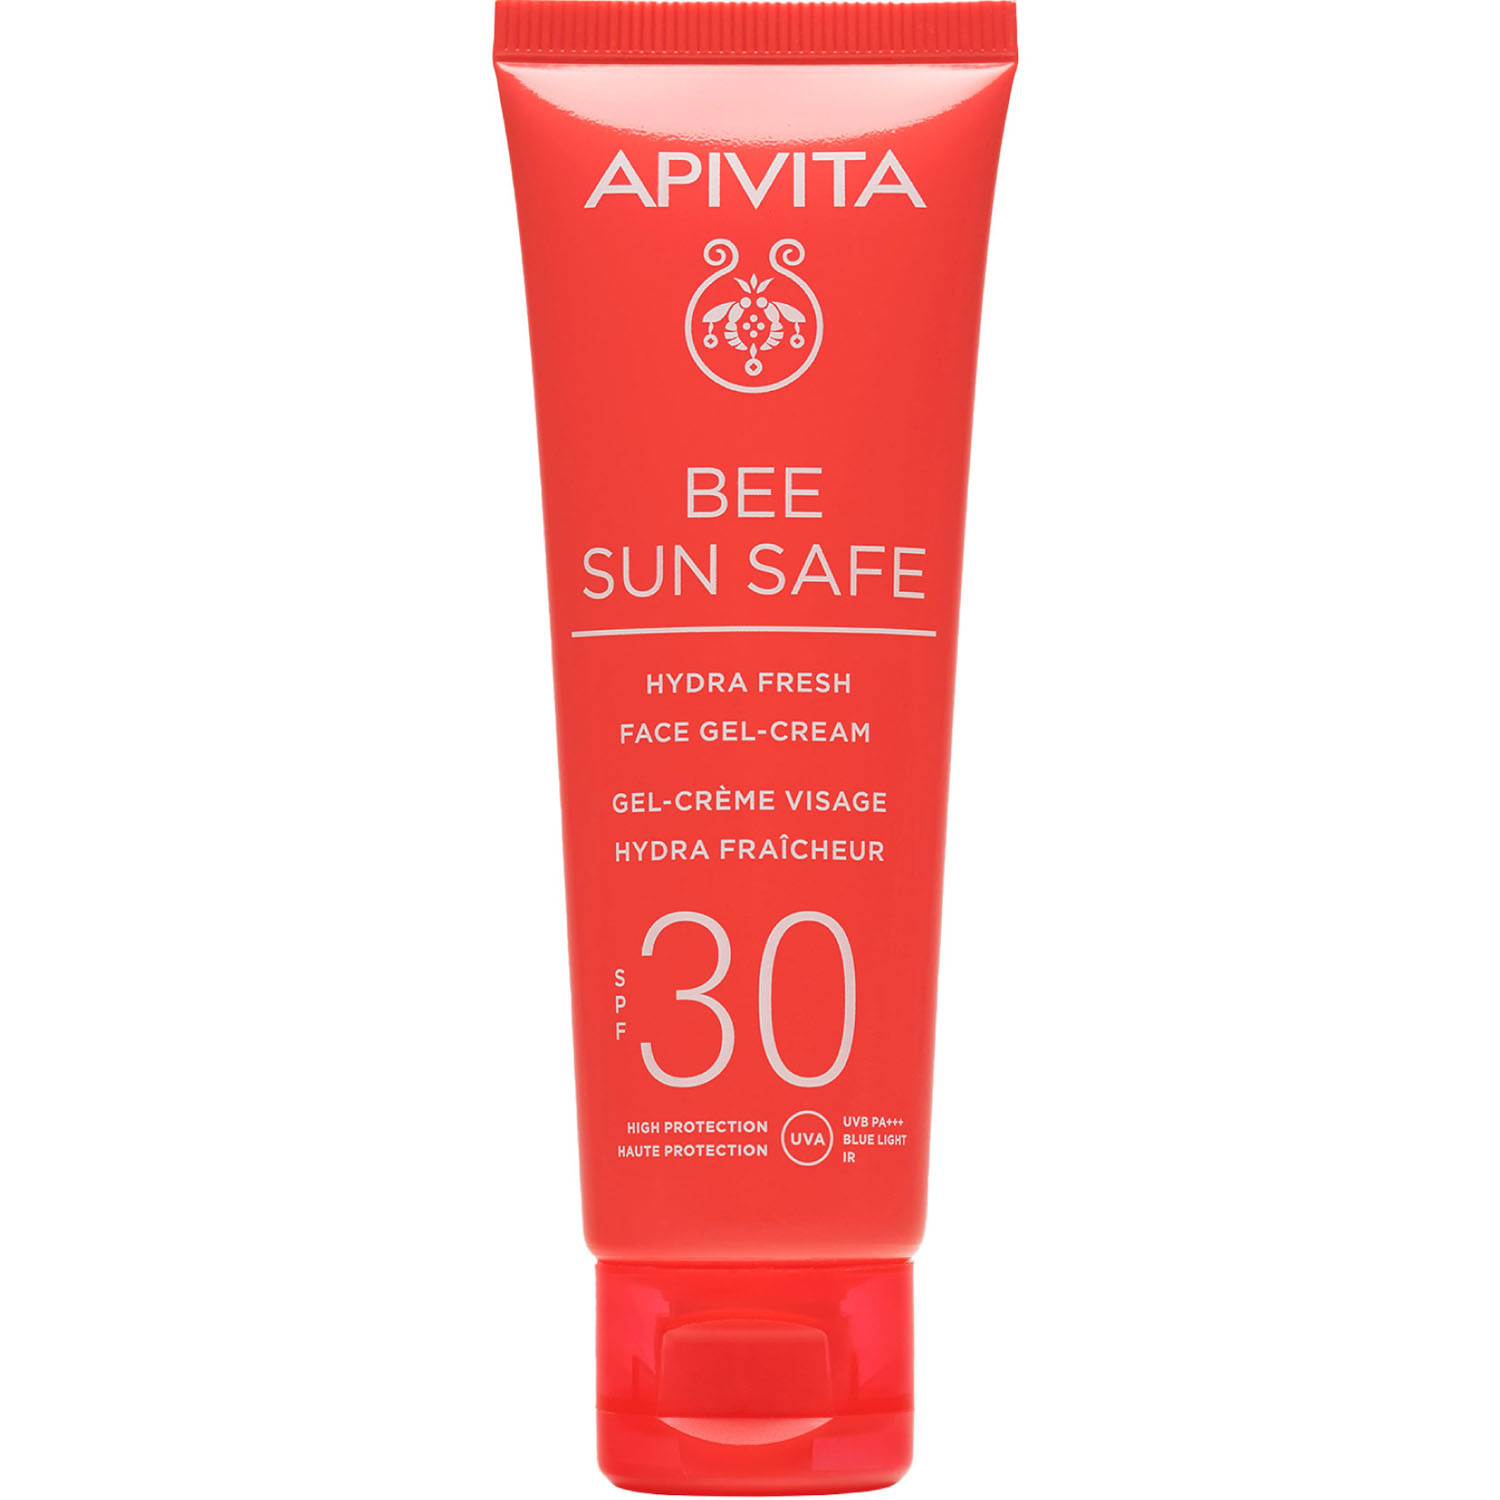 Apivita Солнцезащитный свежий увлажняющий гель-крем для лица SPF 30, 50 мл (Apivita, Bee Sun Safe) цена и фото